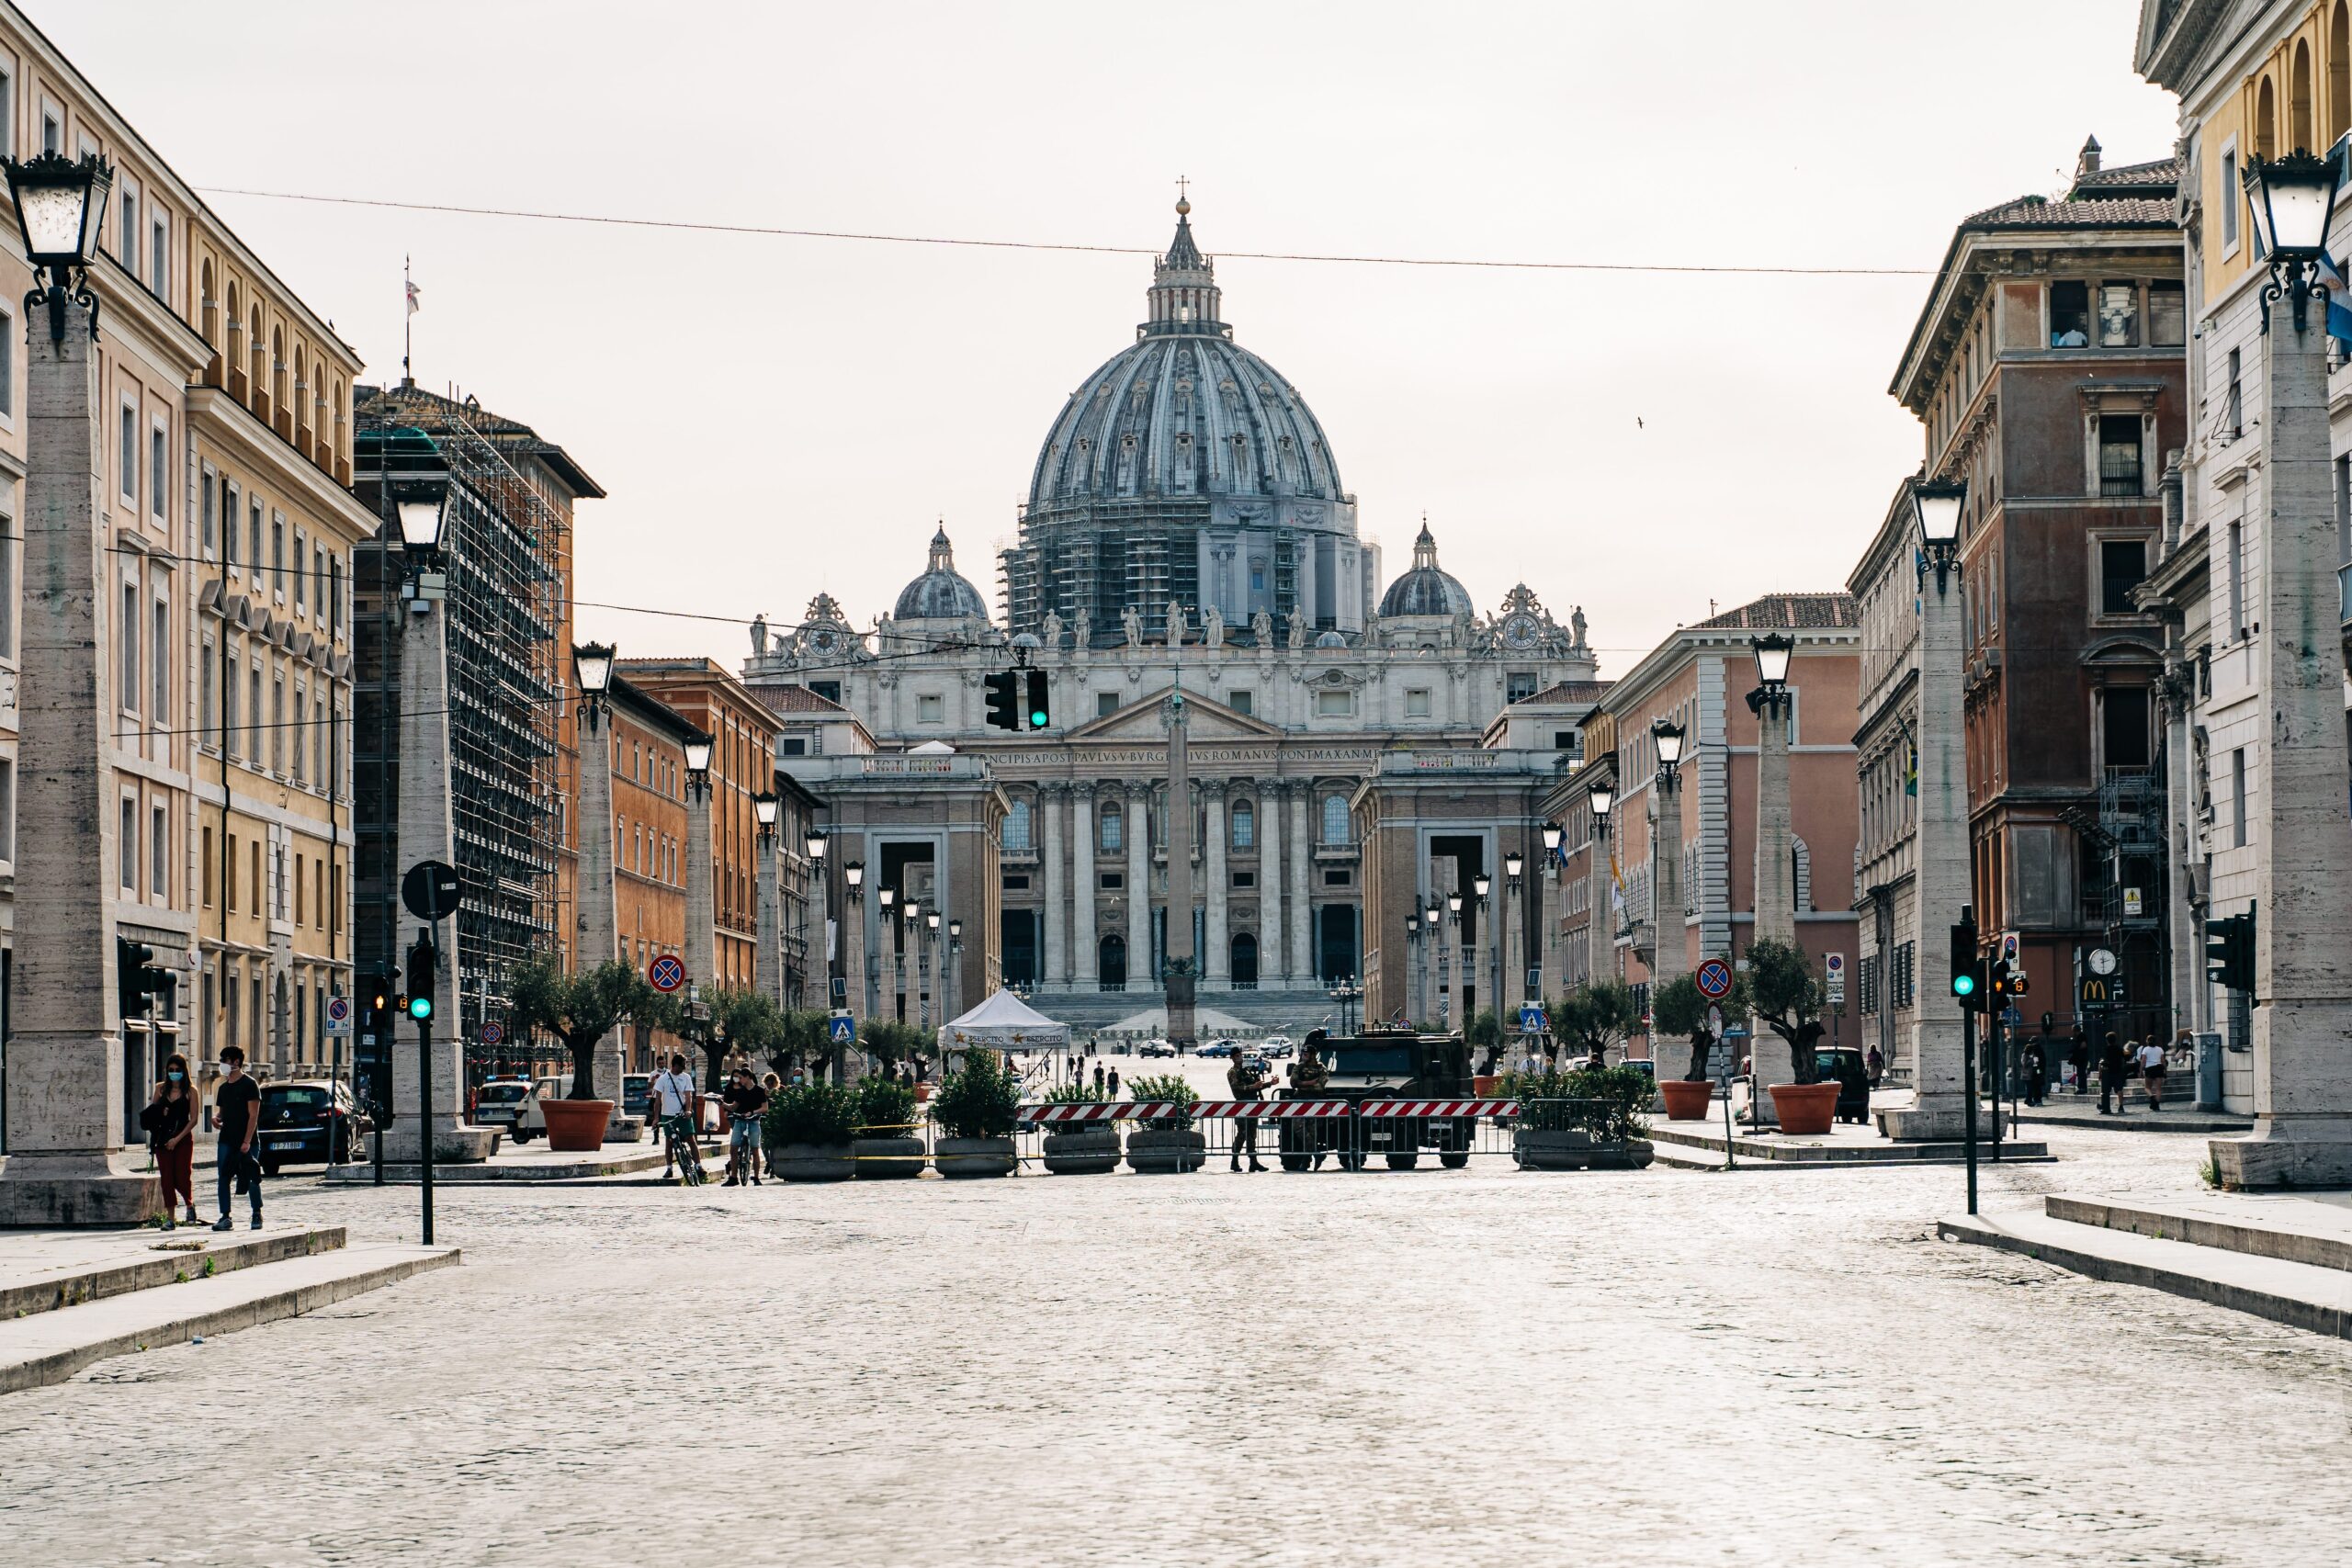 Saint Peter's Square, Vatican City